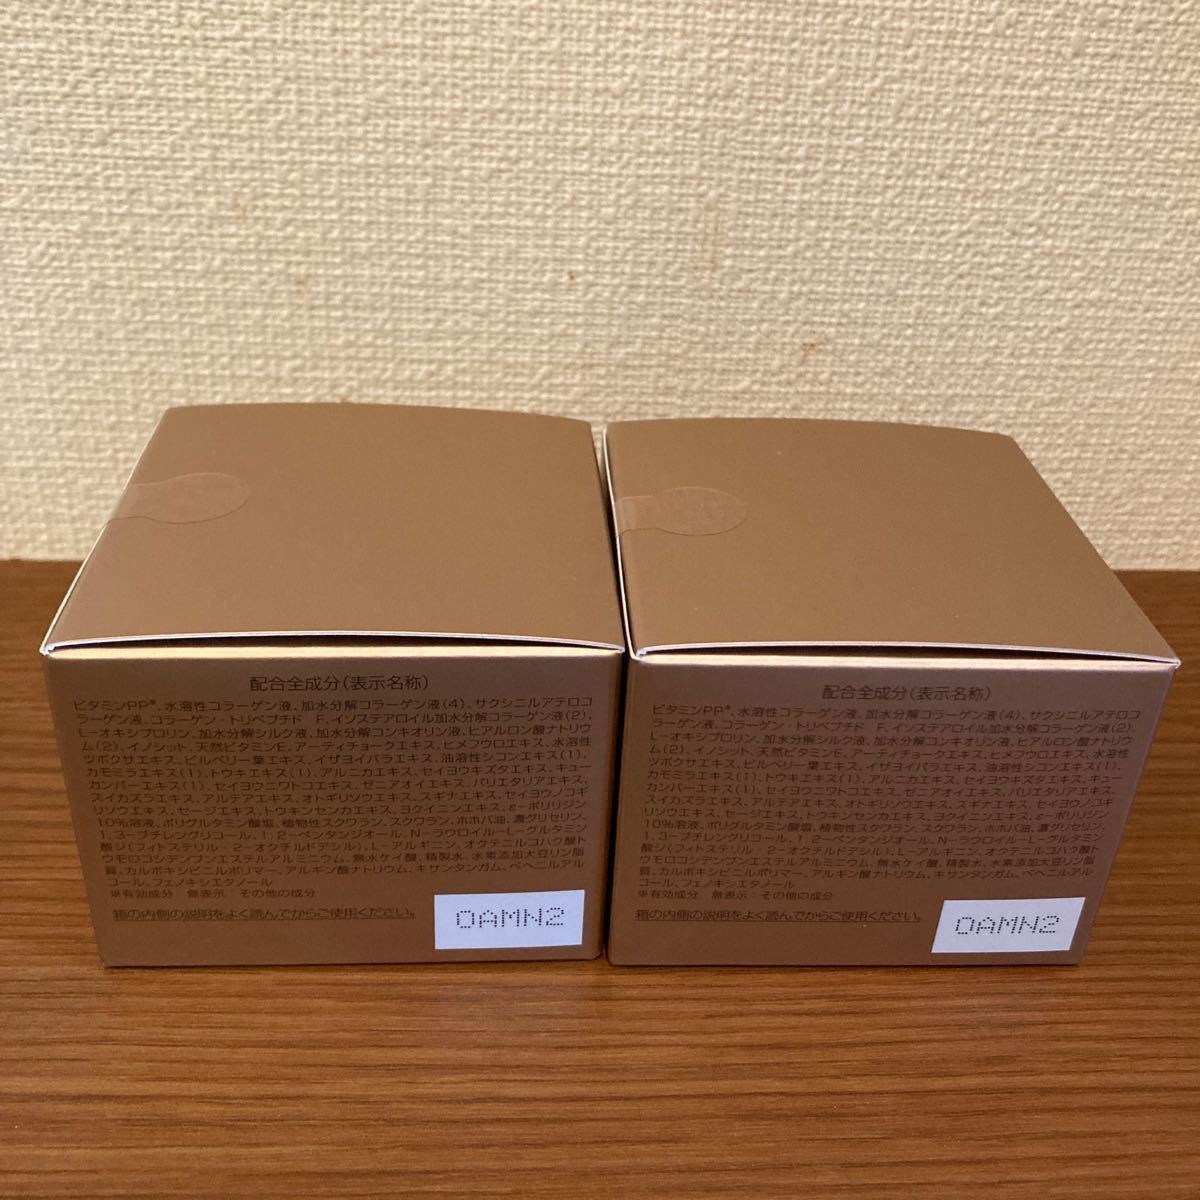 【新品未開封】 パーフェクトワン 薬用リンクルストレッチジェル 50g × 2個 セット 